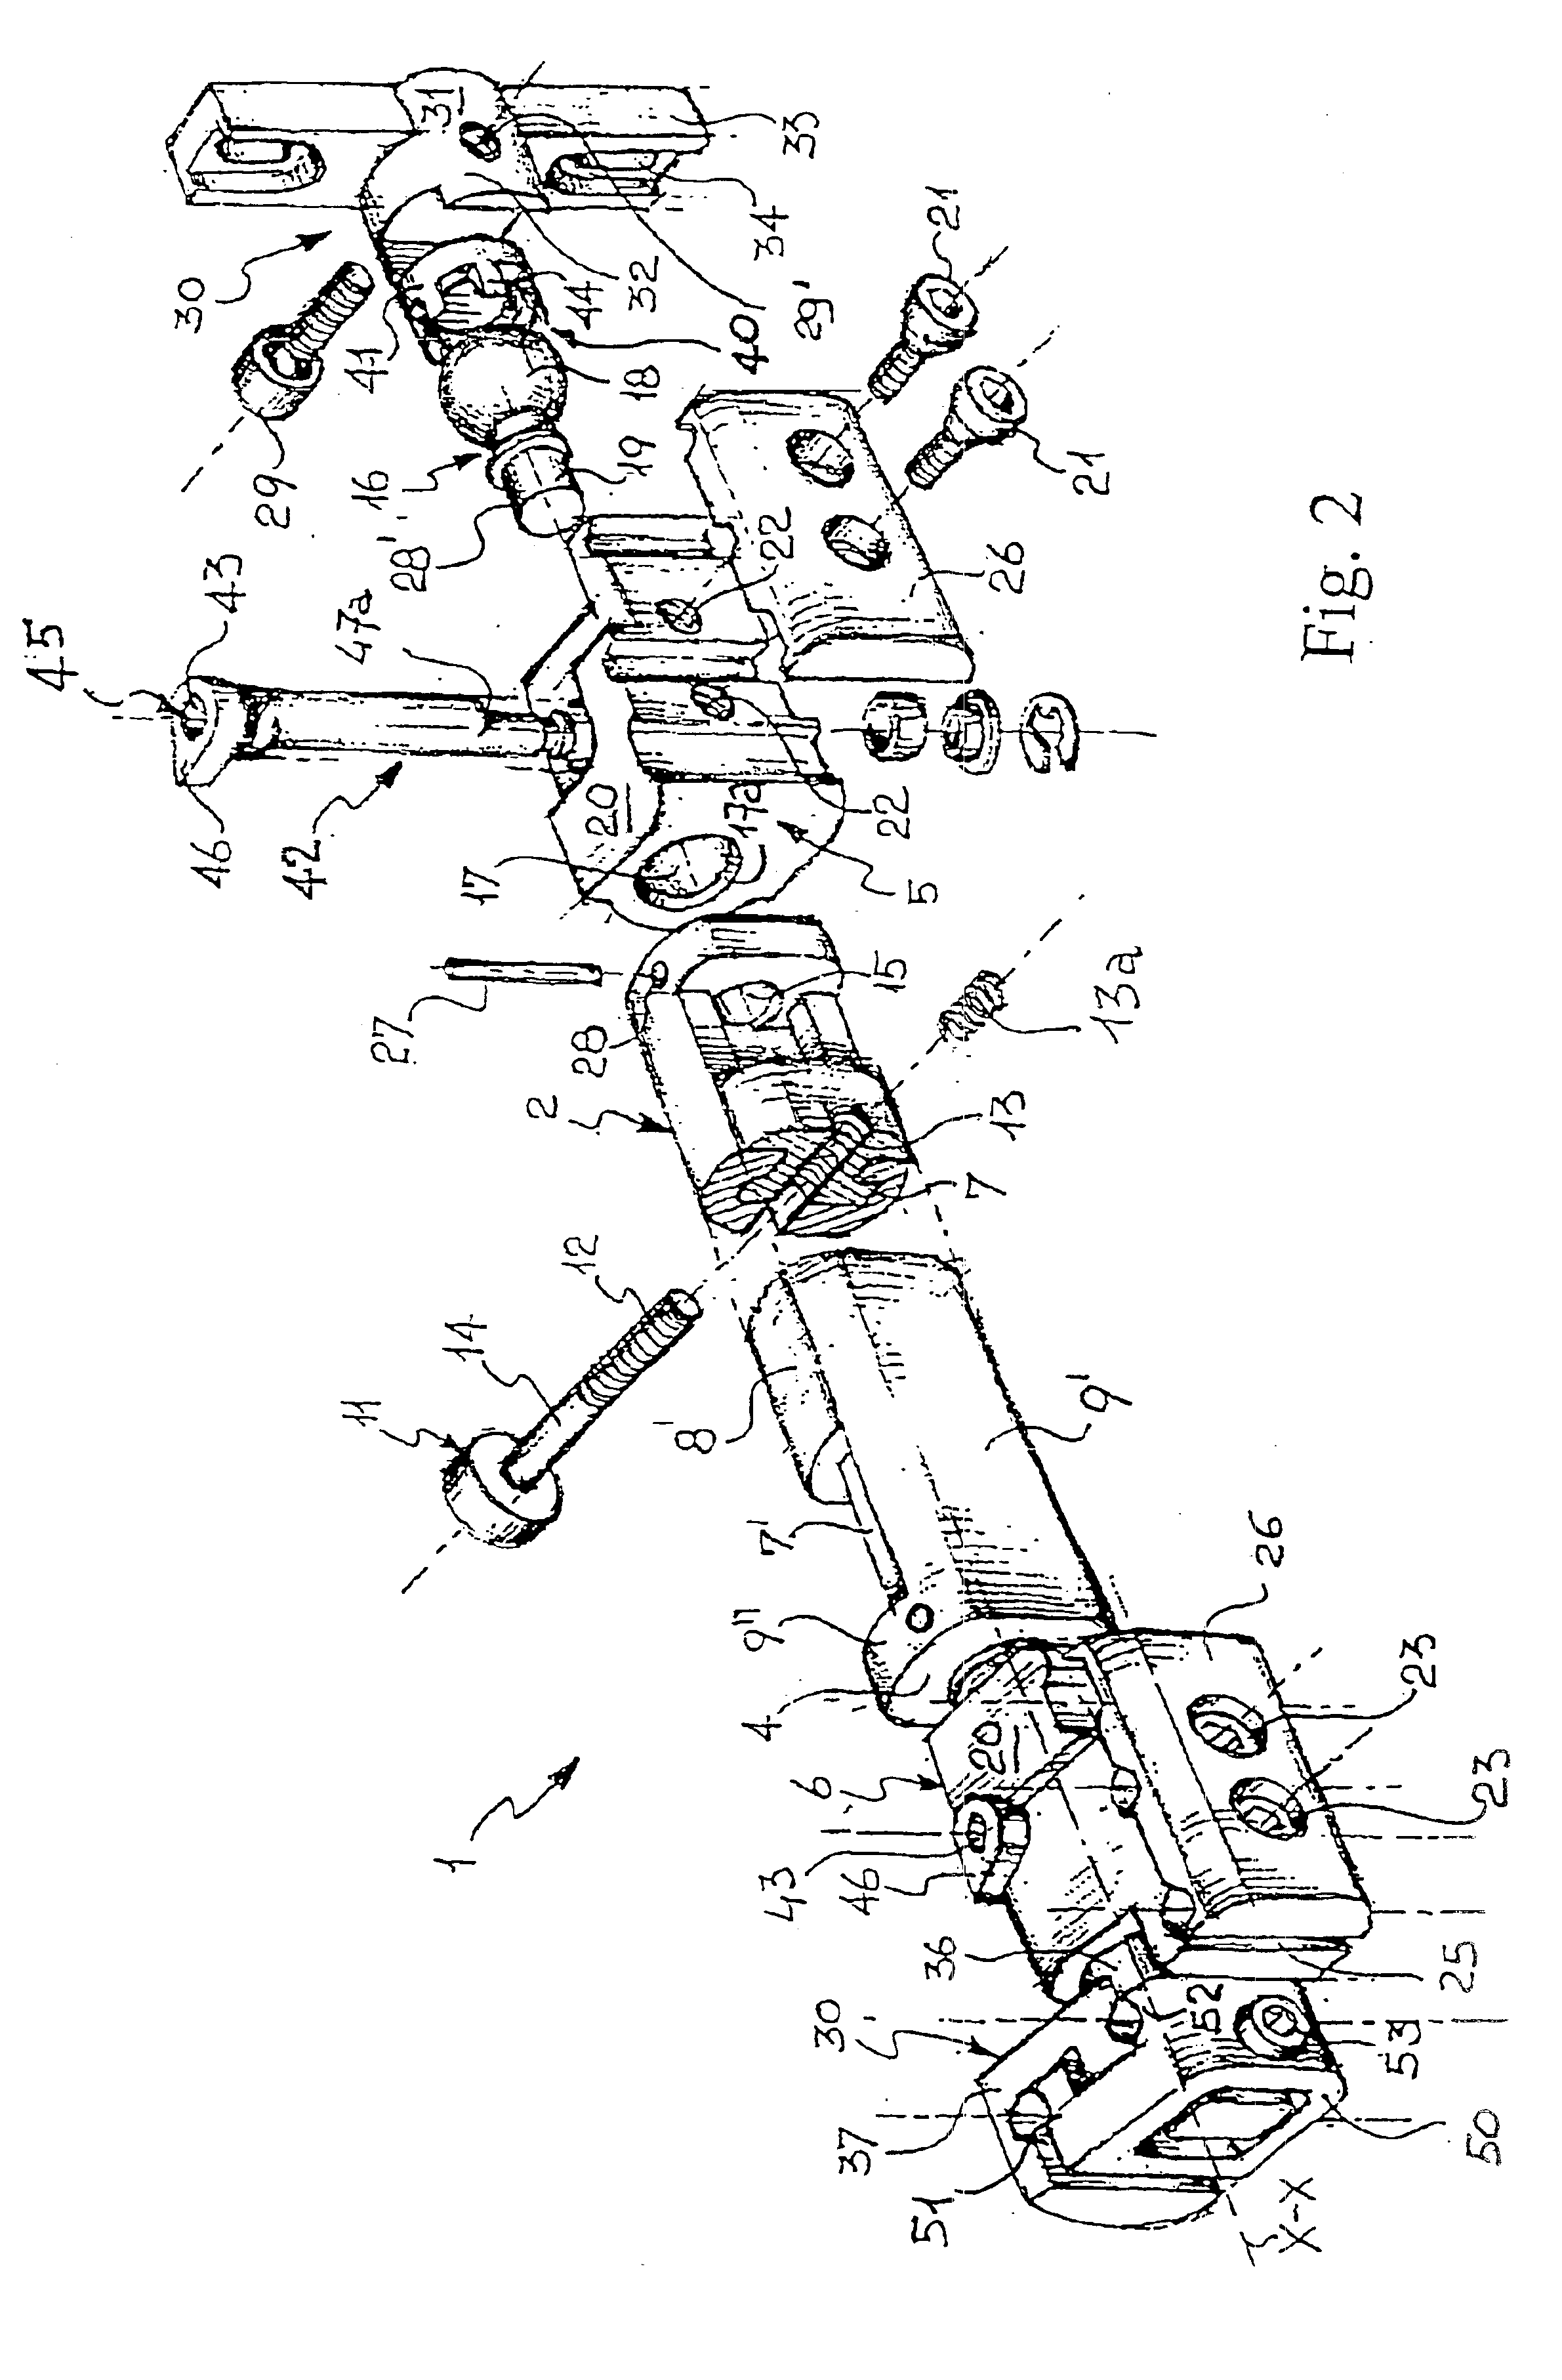 Axial external fixator